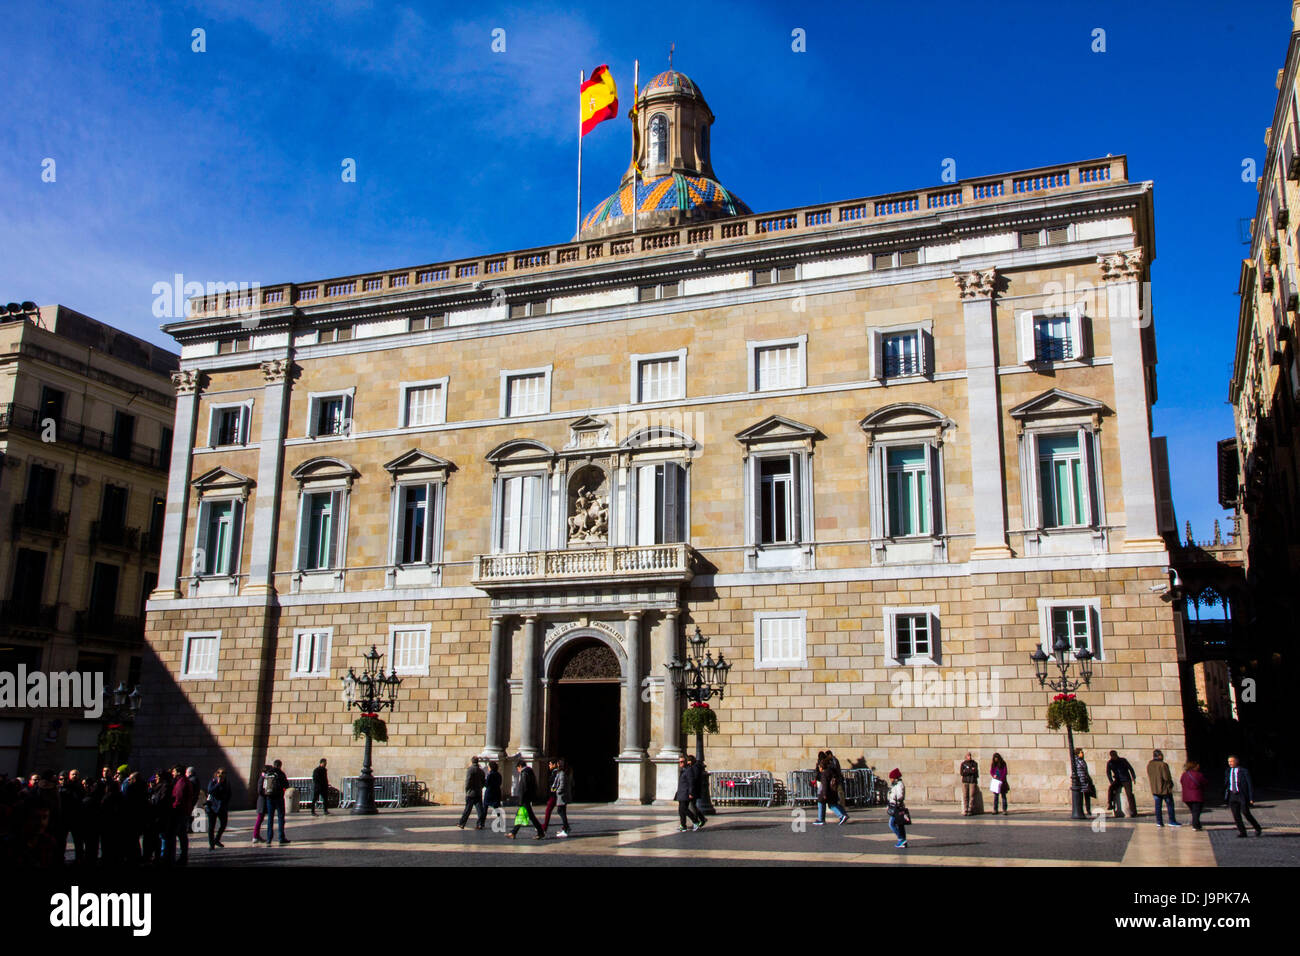 Le Palau de la Generalitat de Catalunya est à la maison pour le gouvernement de la Catalogne. Il date de 1400 et est l'un des rares édifices d'origine médiévale. Banque D'Images